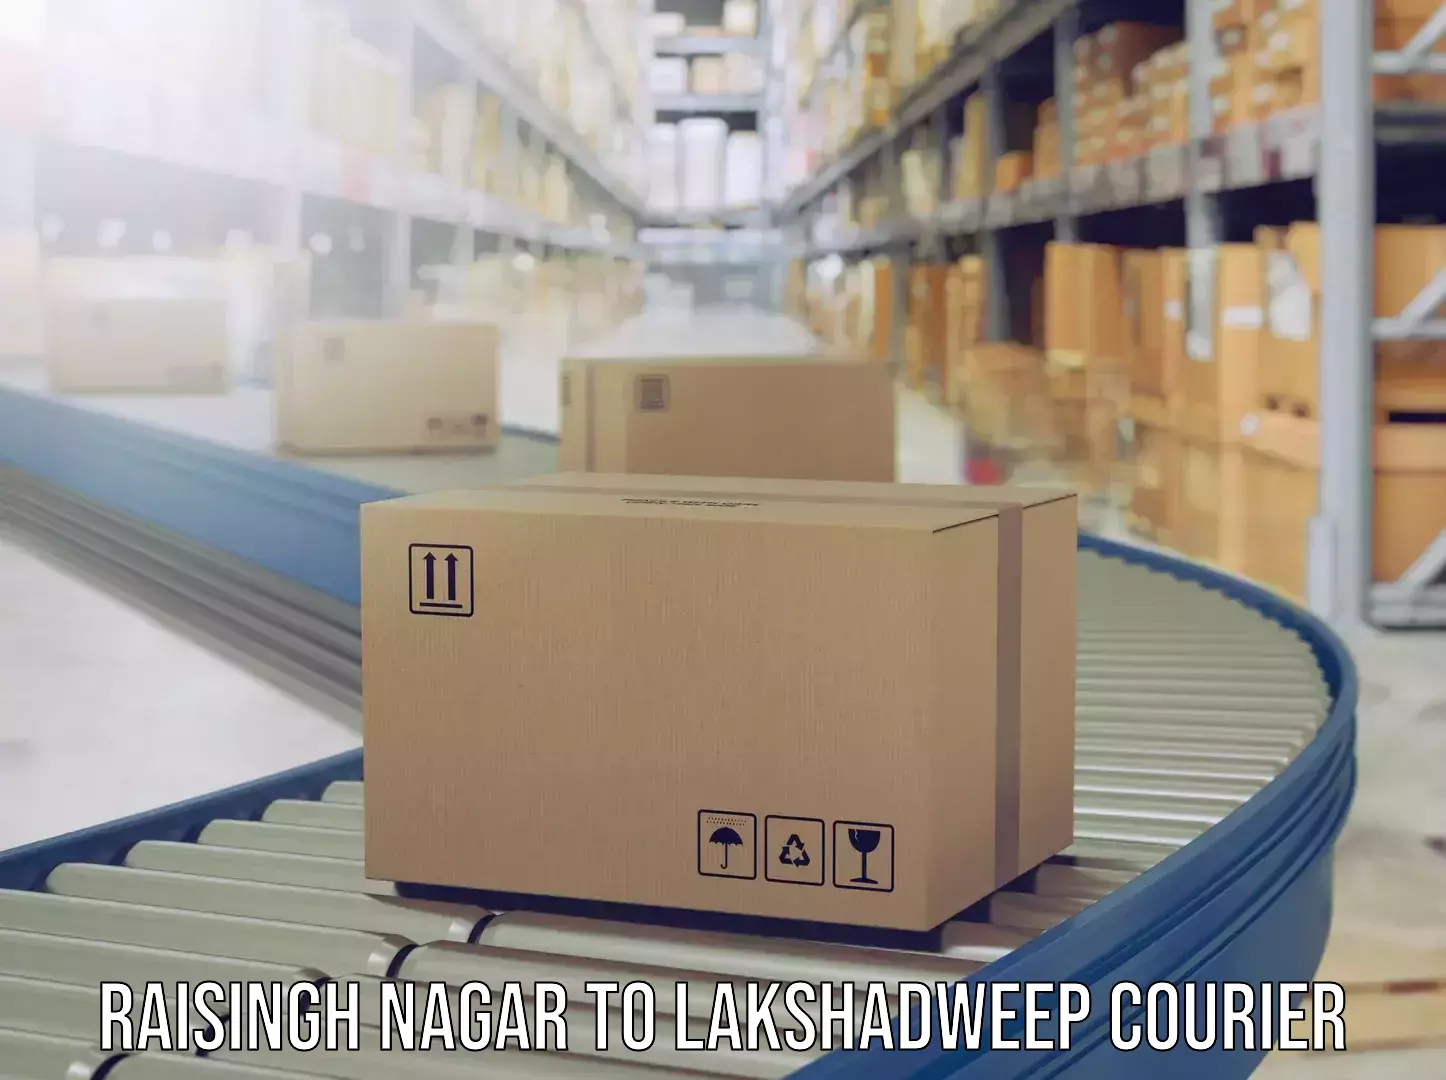 Holiday season luggage delivery Raisingh Nagar to Lakshadweep